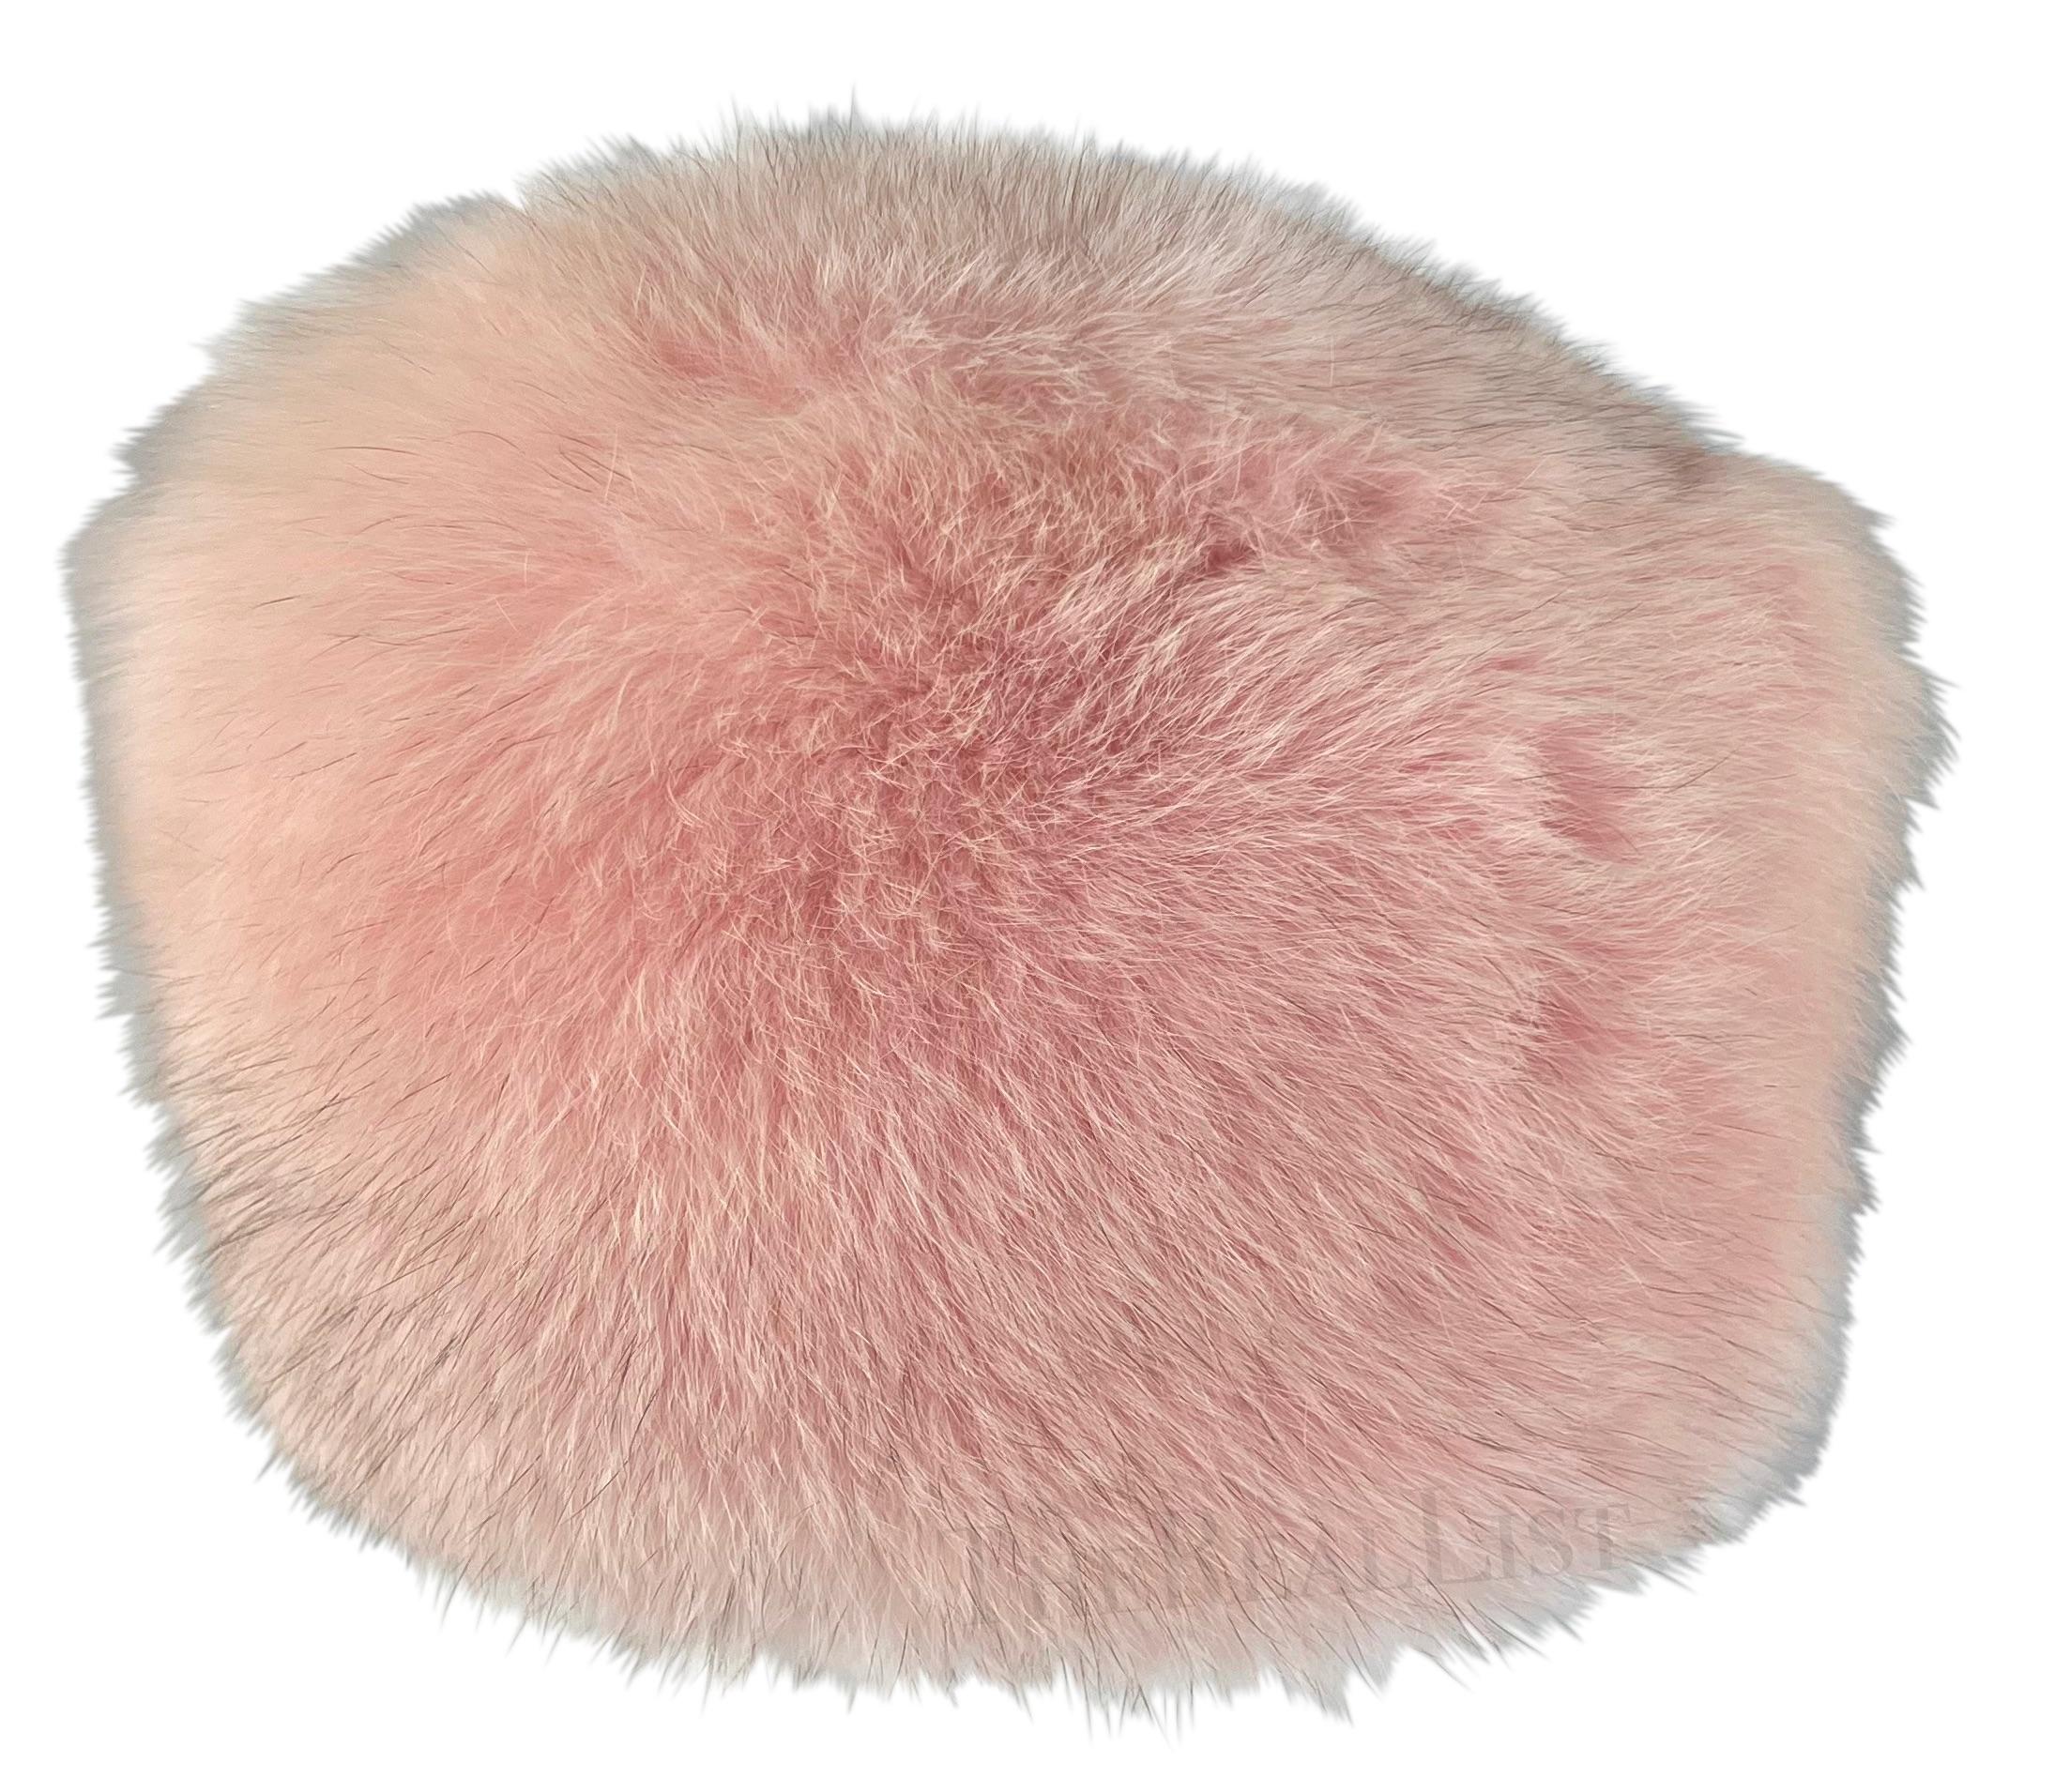 Voici un bonnet en fourrure de renard Burberry London parfaitement rose. Datant du début des années 2000, ce chapeau rose clair de style pillbox respire l'élégance et la sophistication. Entièrement réalisée en fourrure de renard, elle offre à la